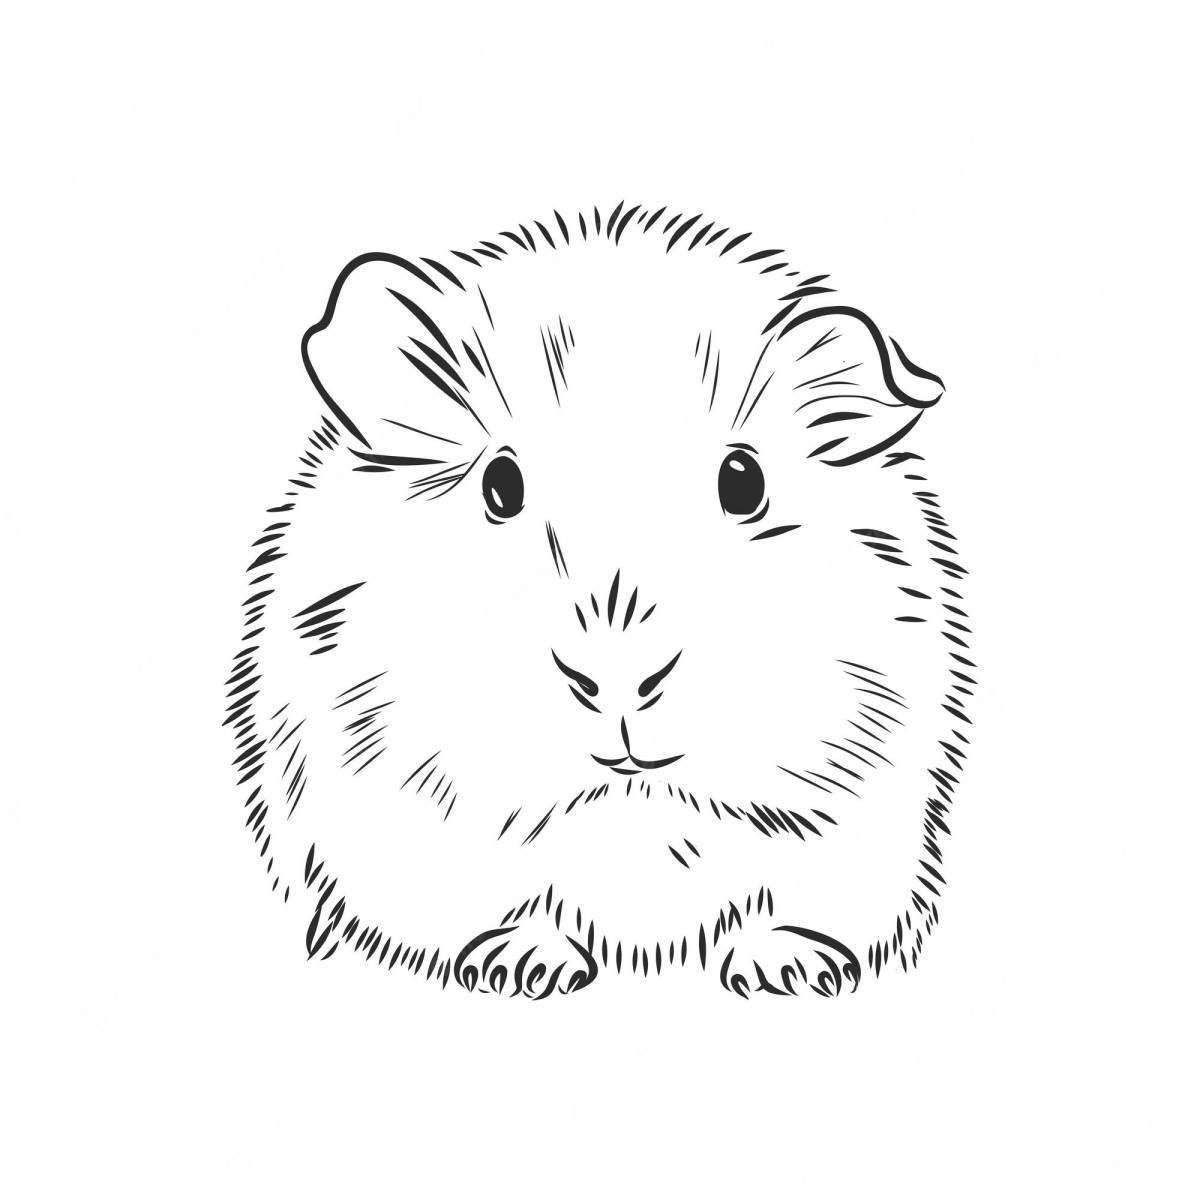 Coloring book humorous Djungarian hamster